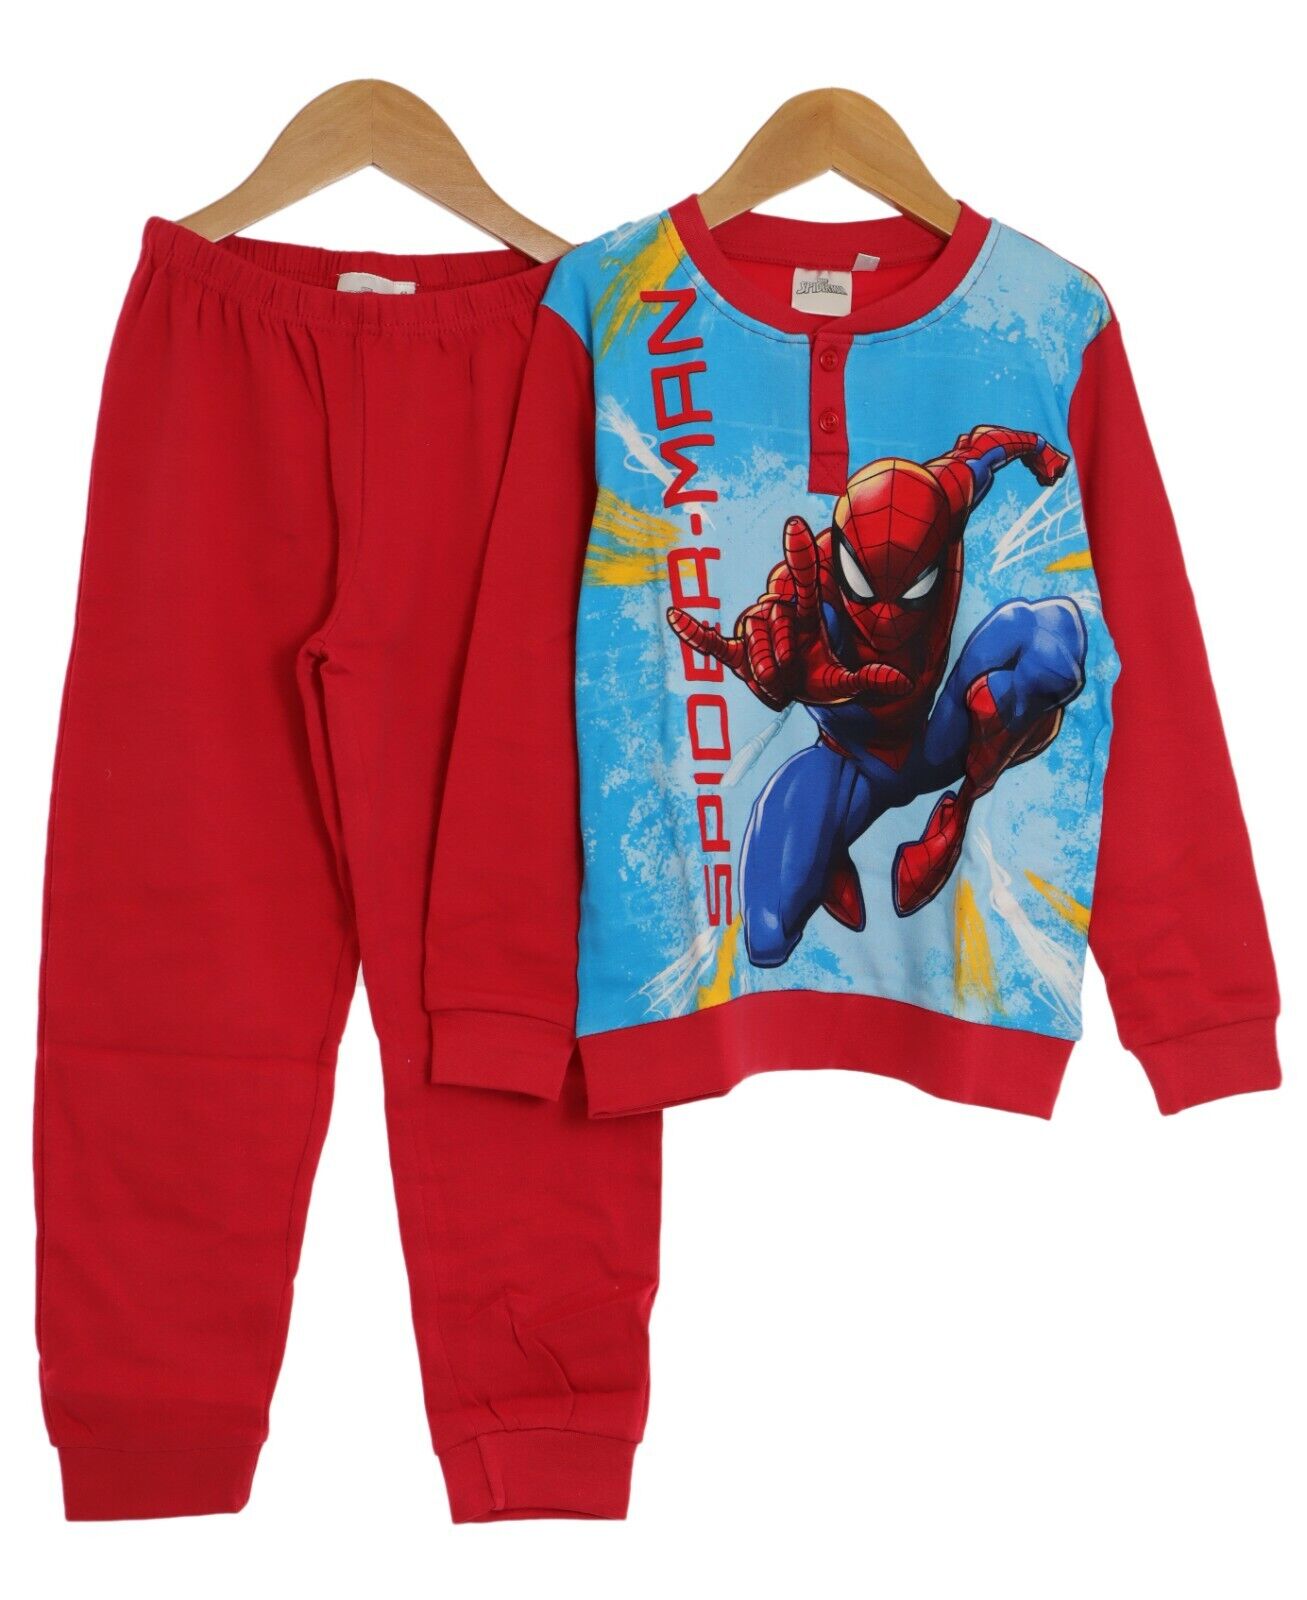 Pigiama Disney Bambino Caldo Cotone Interlock Spiderman Rosso 100% Cotone (3132)